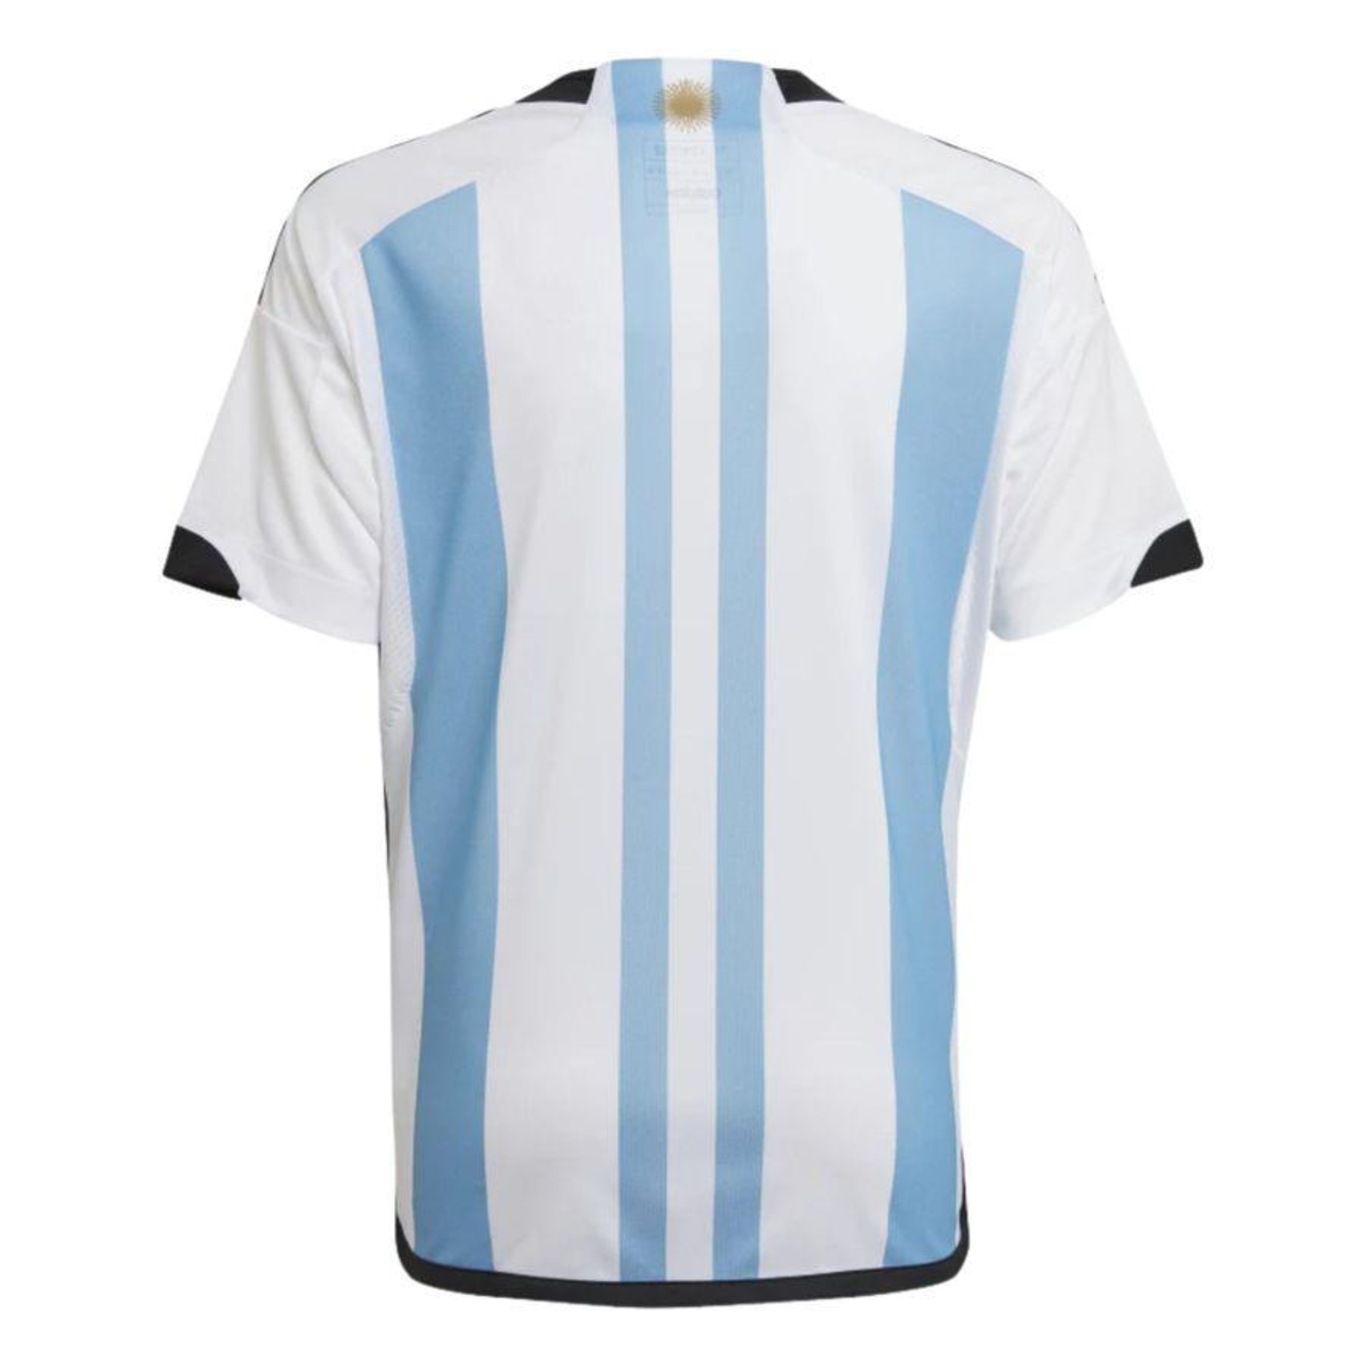 Camiseta Adidas Messi Graphic Infantil - UNISPORT